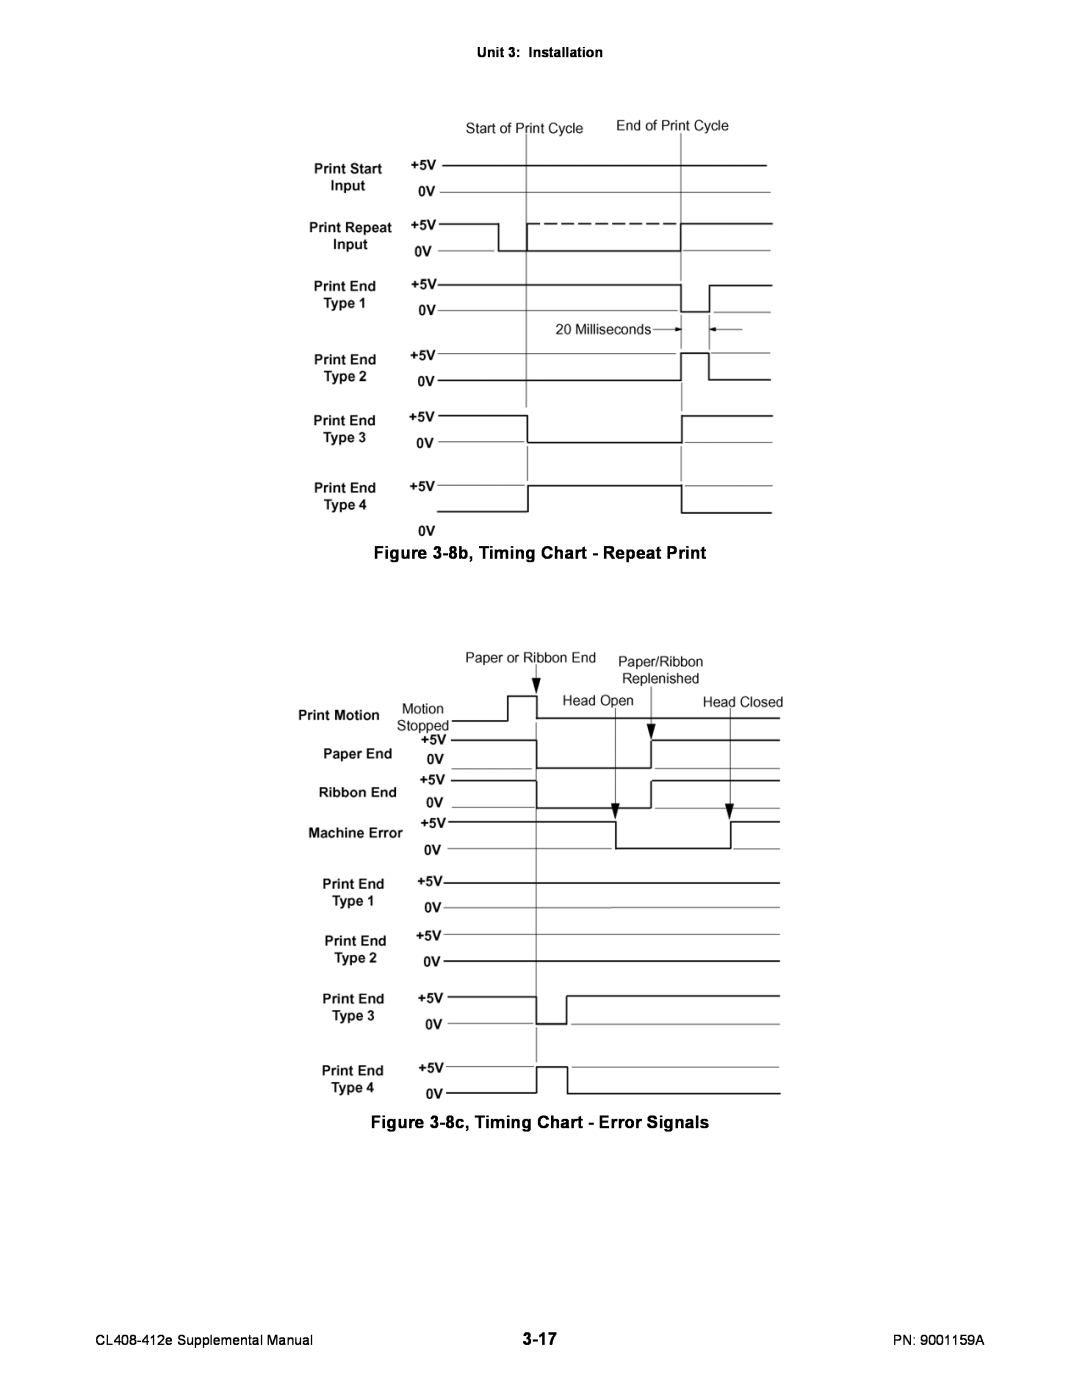 SATO CL408-412e manual 8b, Timing Chart - Repeat Print, 8c, Timing Chart - Error Signals, 3-17, Unit 3 Installation 